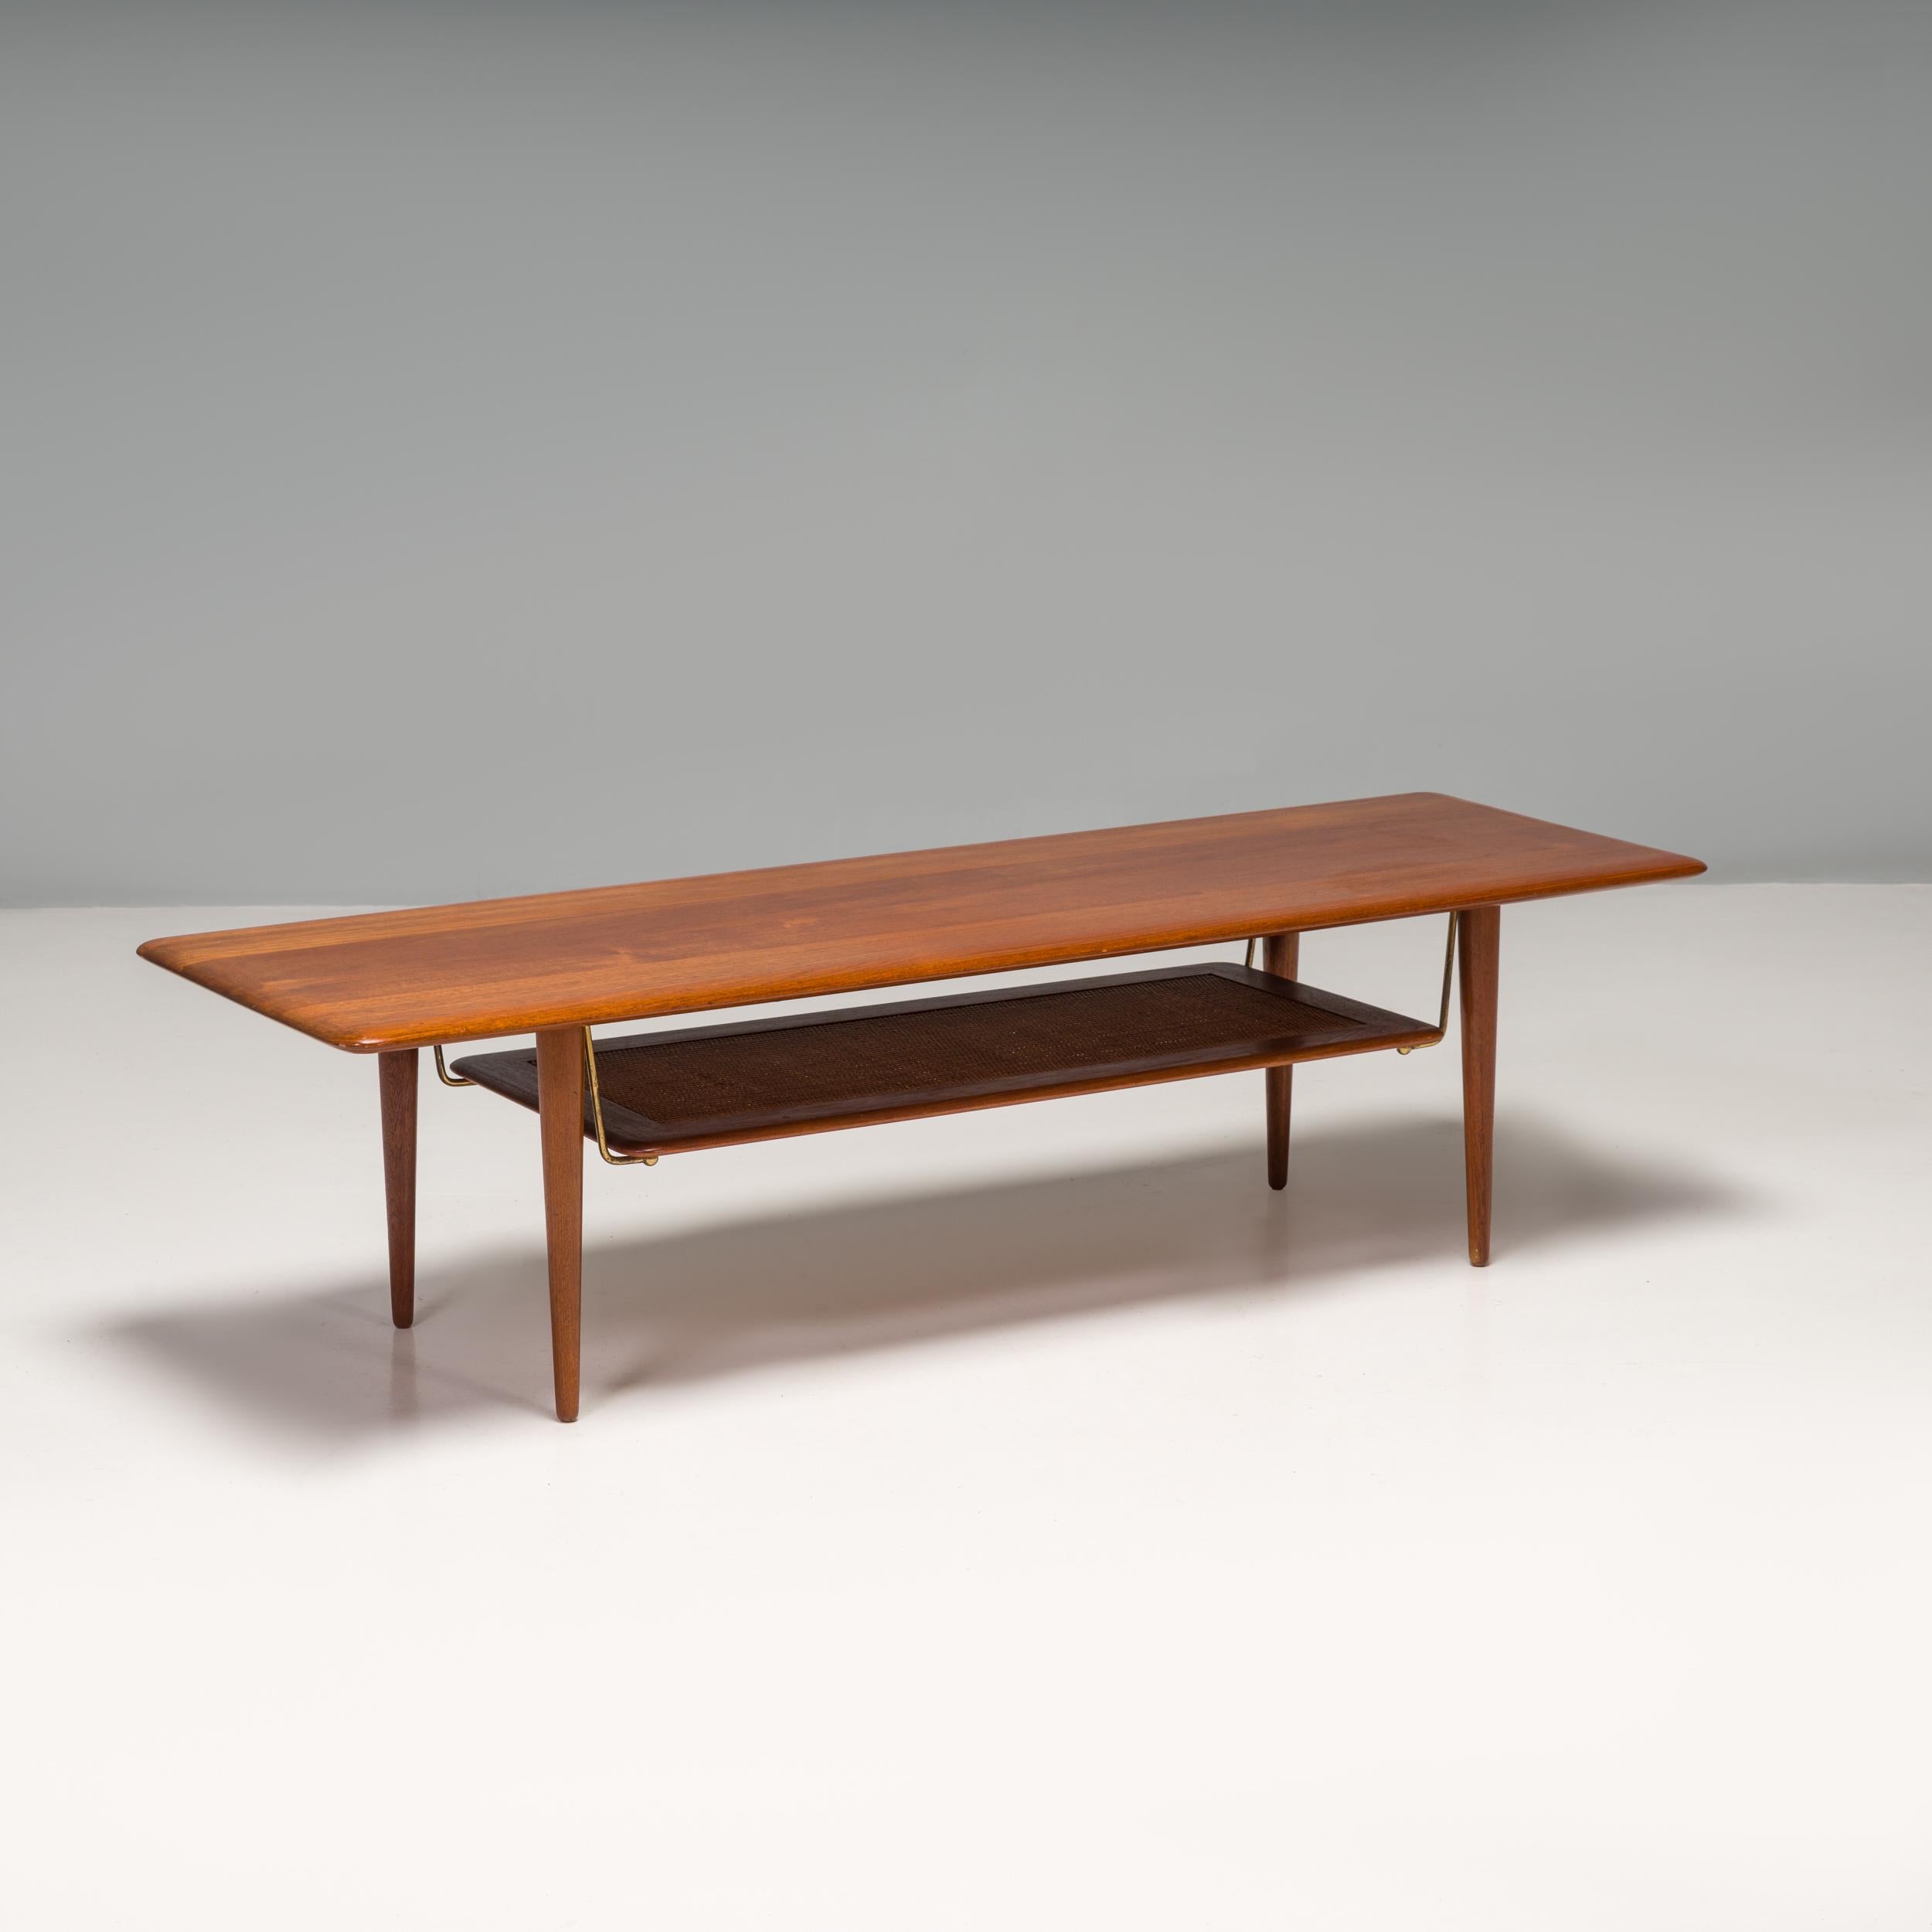 Conçue par Peter Hvidt & Orla Mølgaard Nielsen, la table basse FD-516 a été fabriquée par France & Søn au Danemark.

Fabriquée en teck, la table basse a un grand plateau rectangulaire aux coins incurvés, reposant sur des pieds coniques